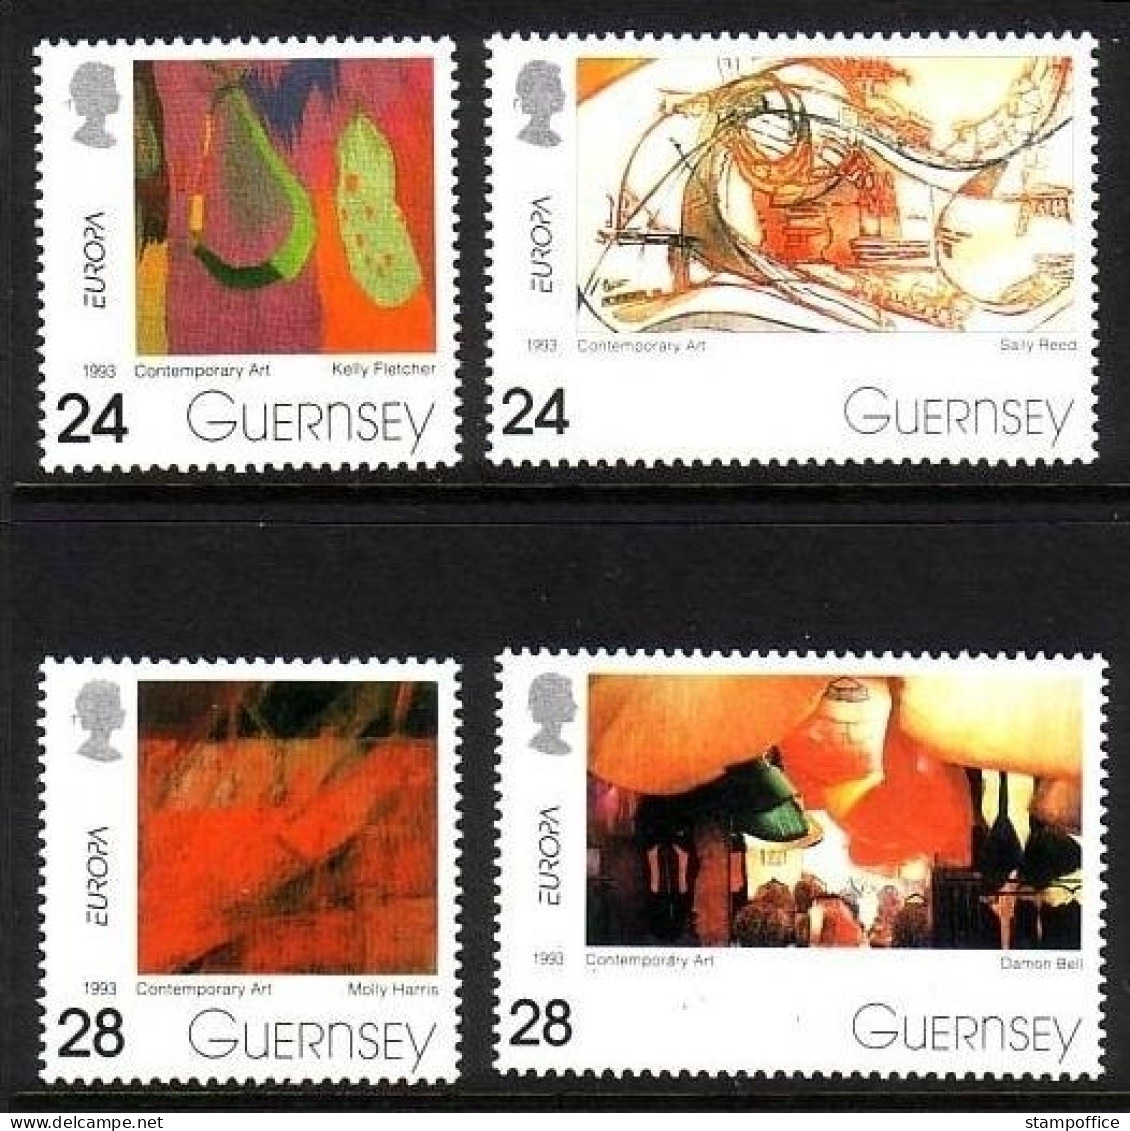 GUERNSEY MI-NR. 608-611 POSTFRISCH(MINT) EUROPA 1993 ZEITGENÖSSISCHE KUNST - 1993